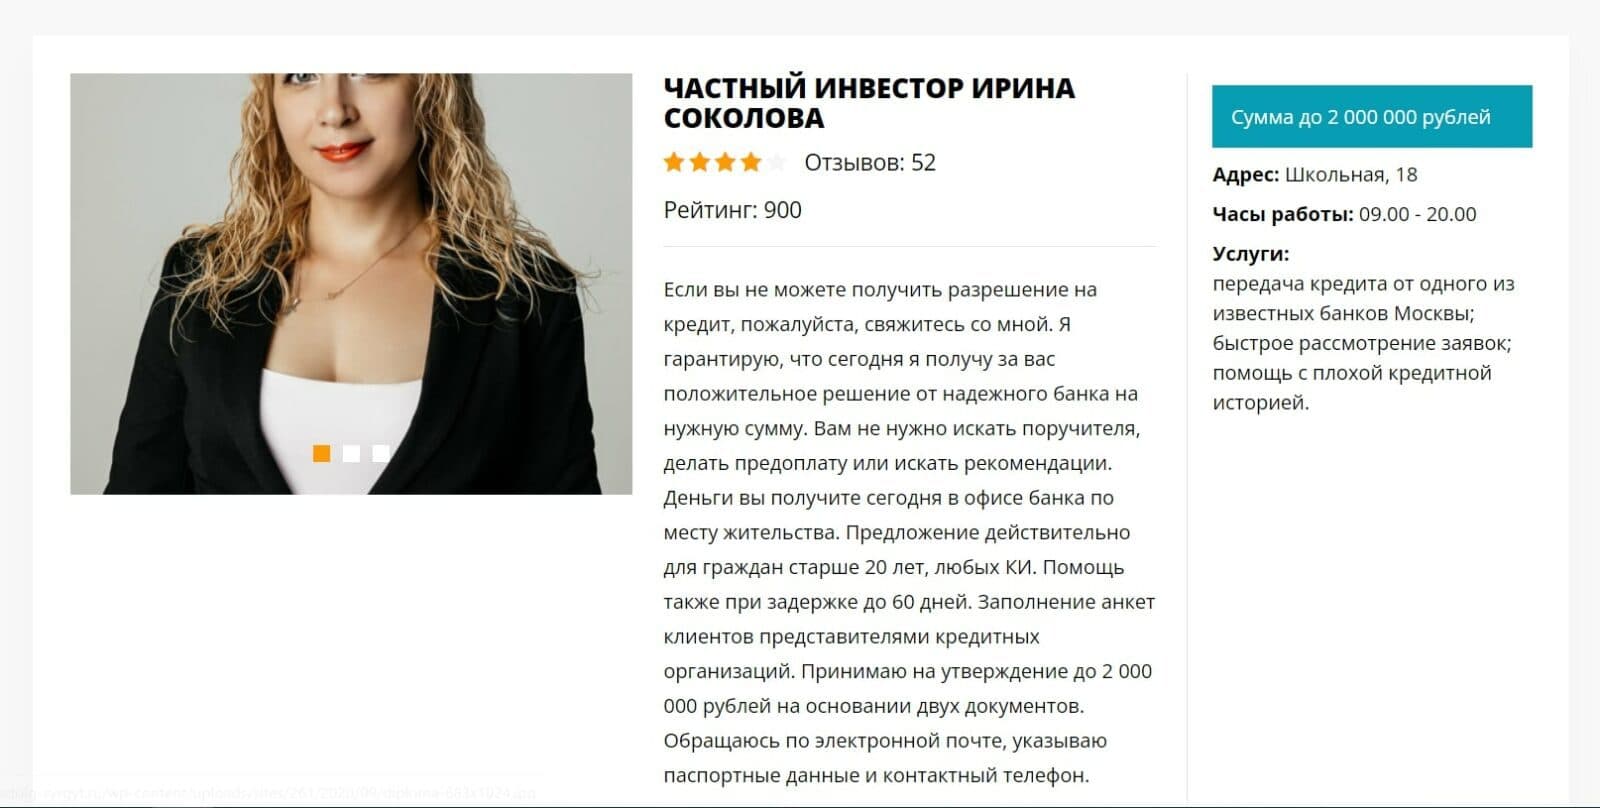 Частный инвестор Ирина Соколова